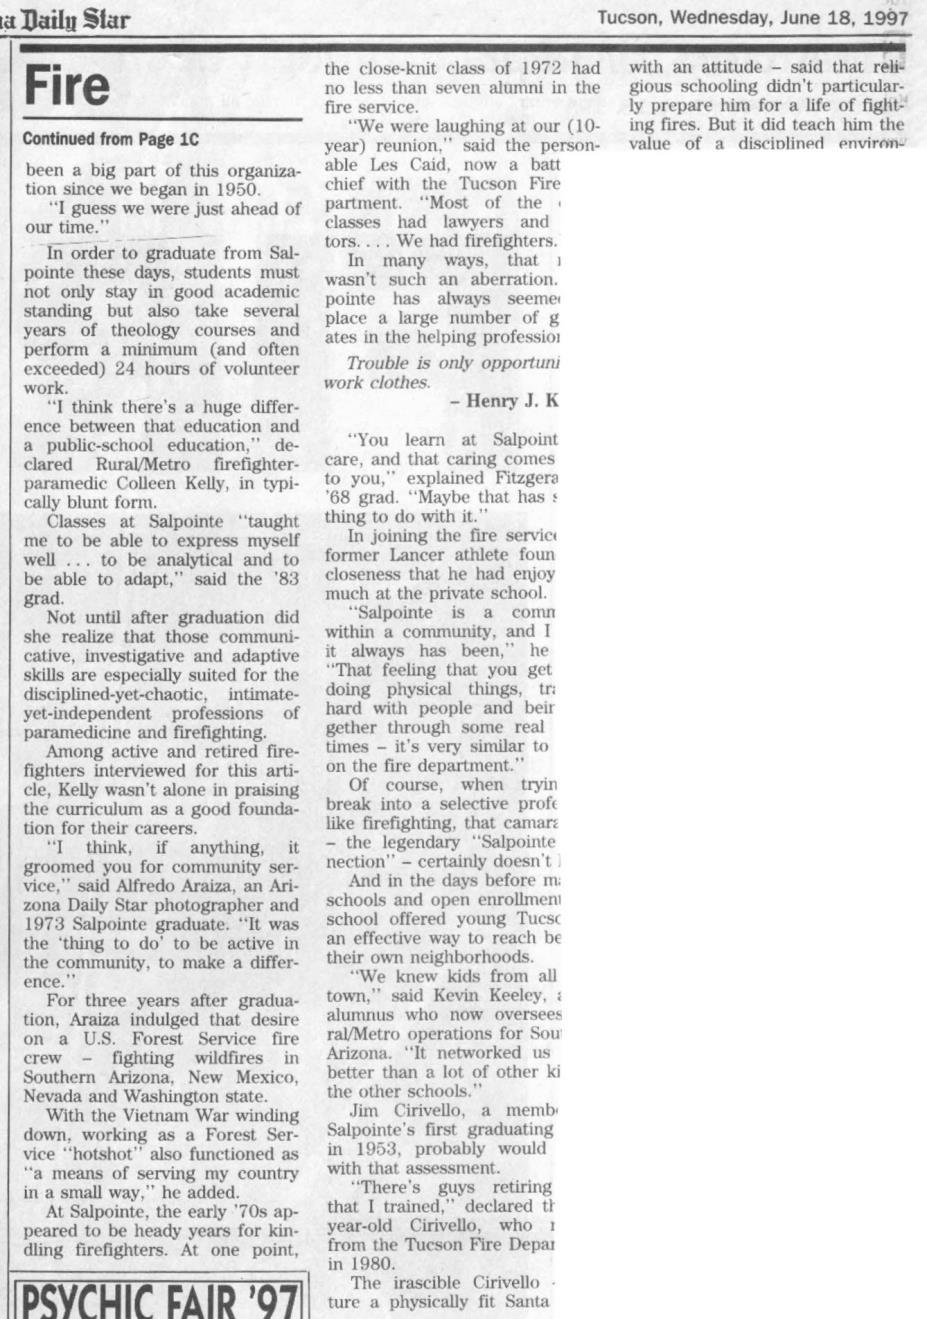 June 18, 1997, Arizona Daily